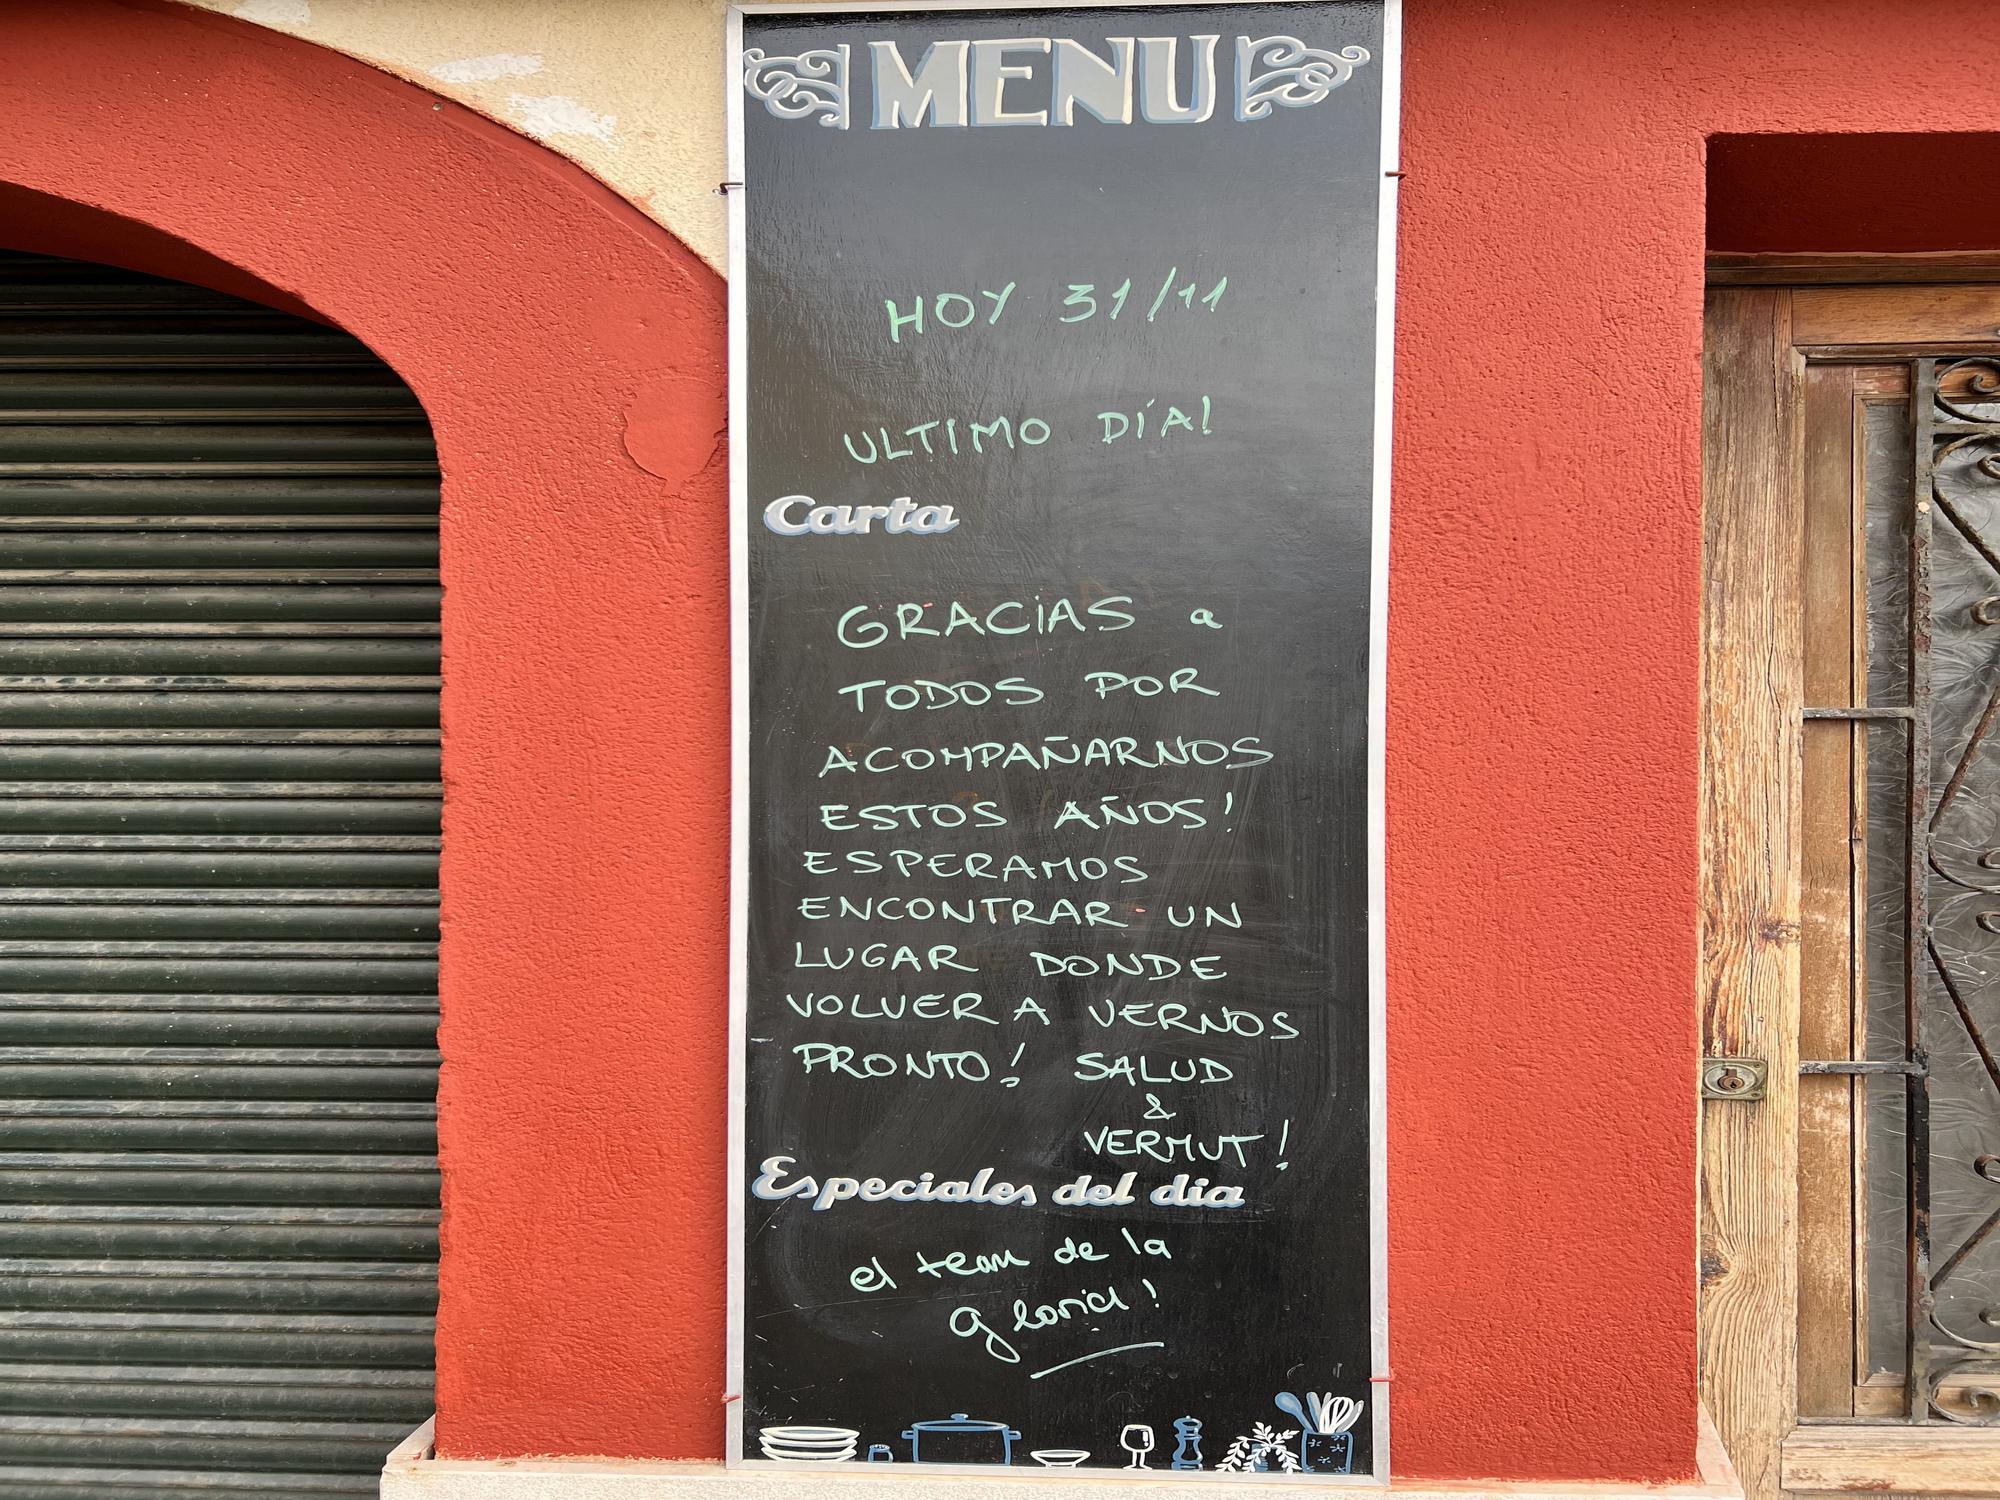 El cartel de despedida en la vermutería La Gloria del Molinar.